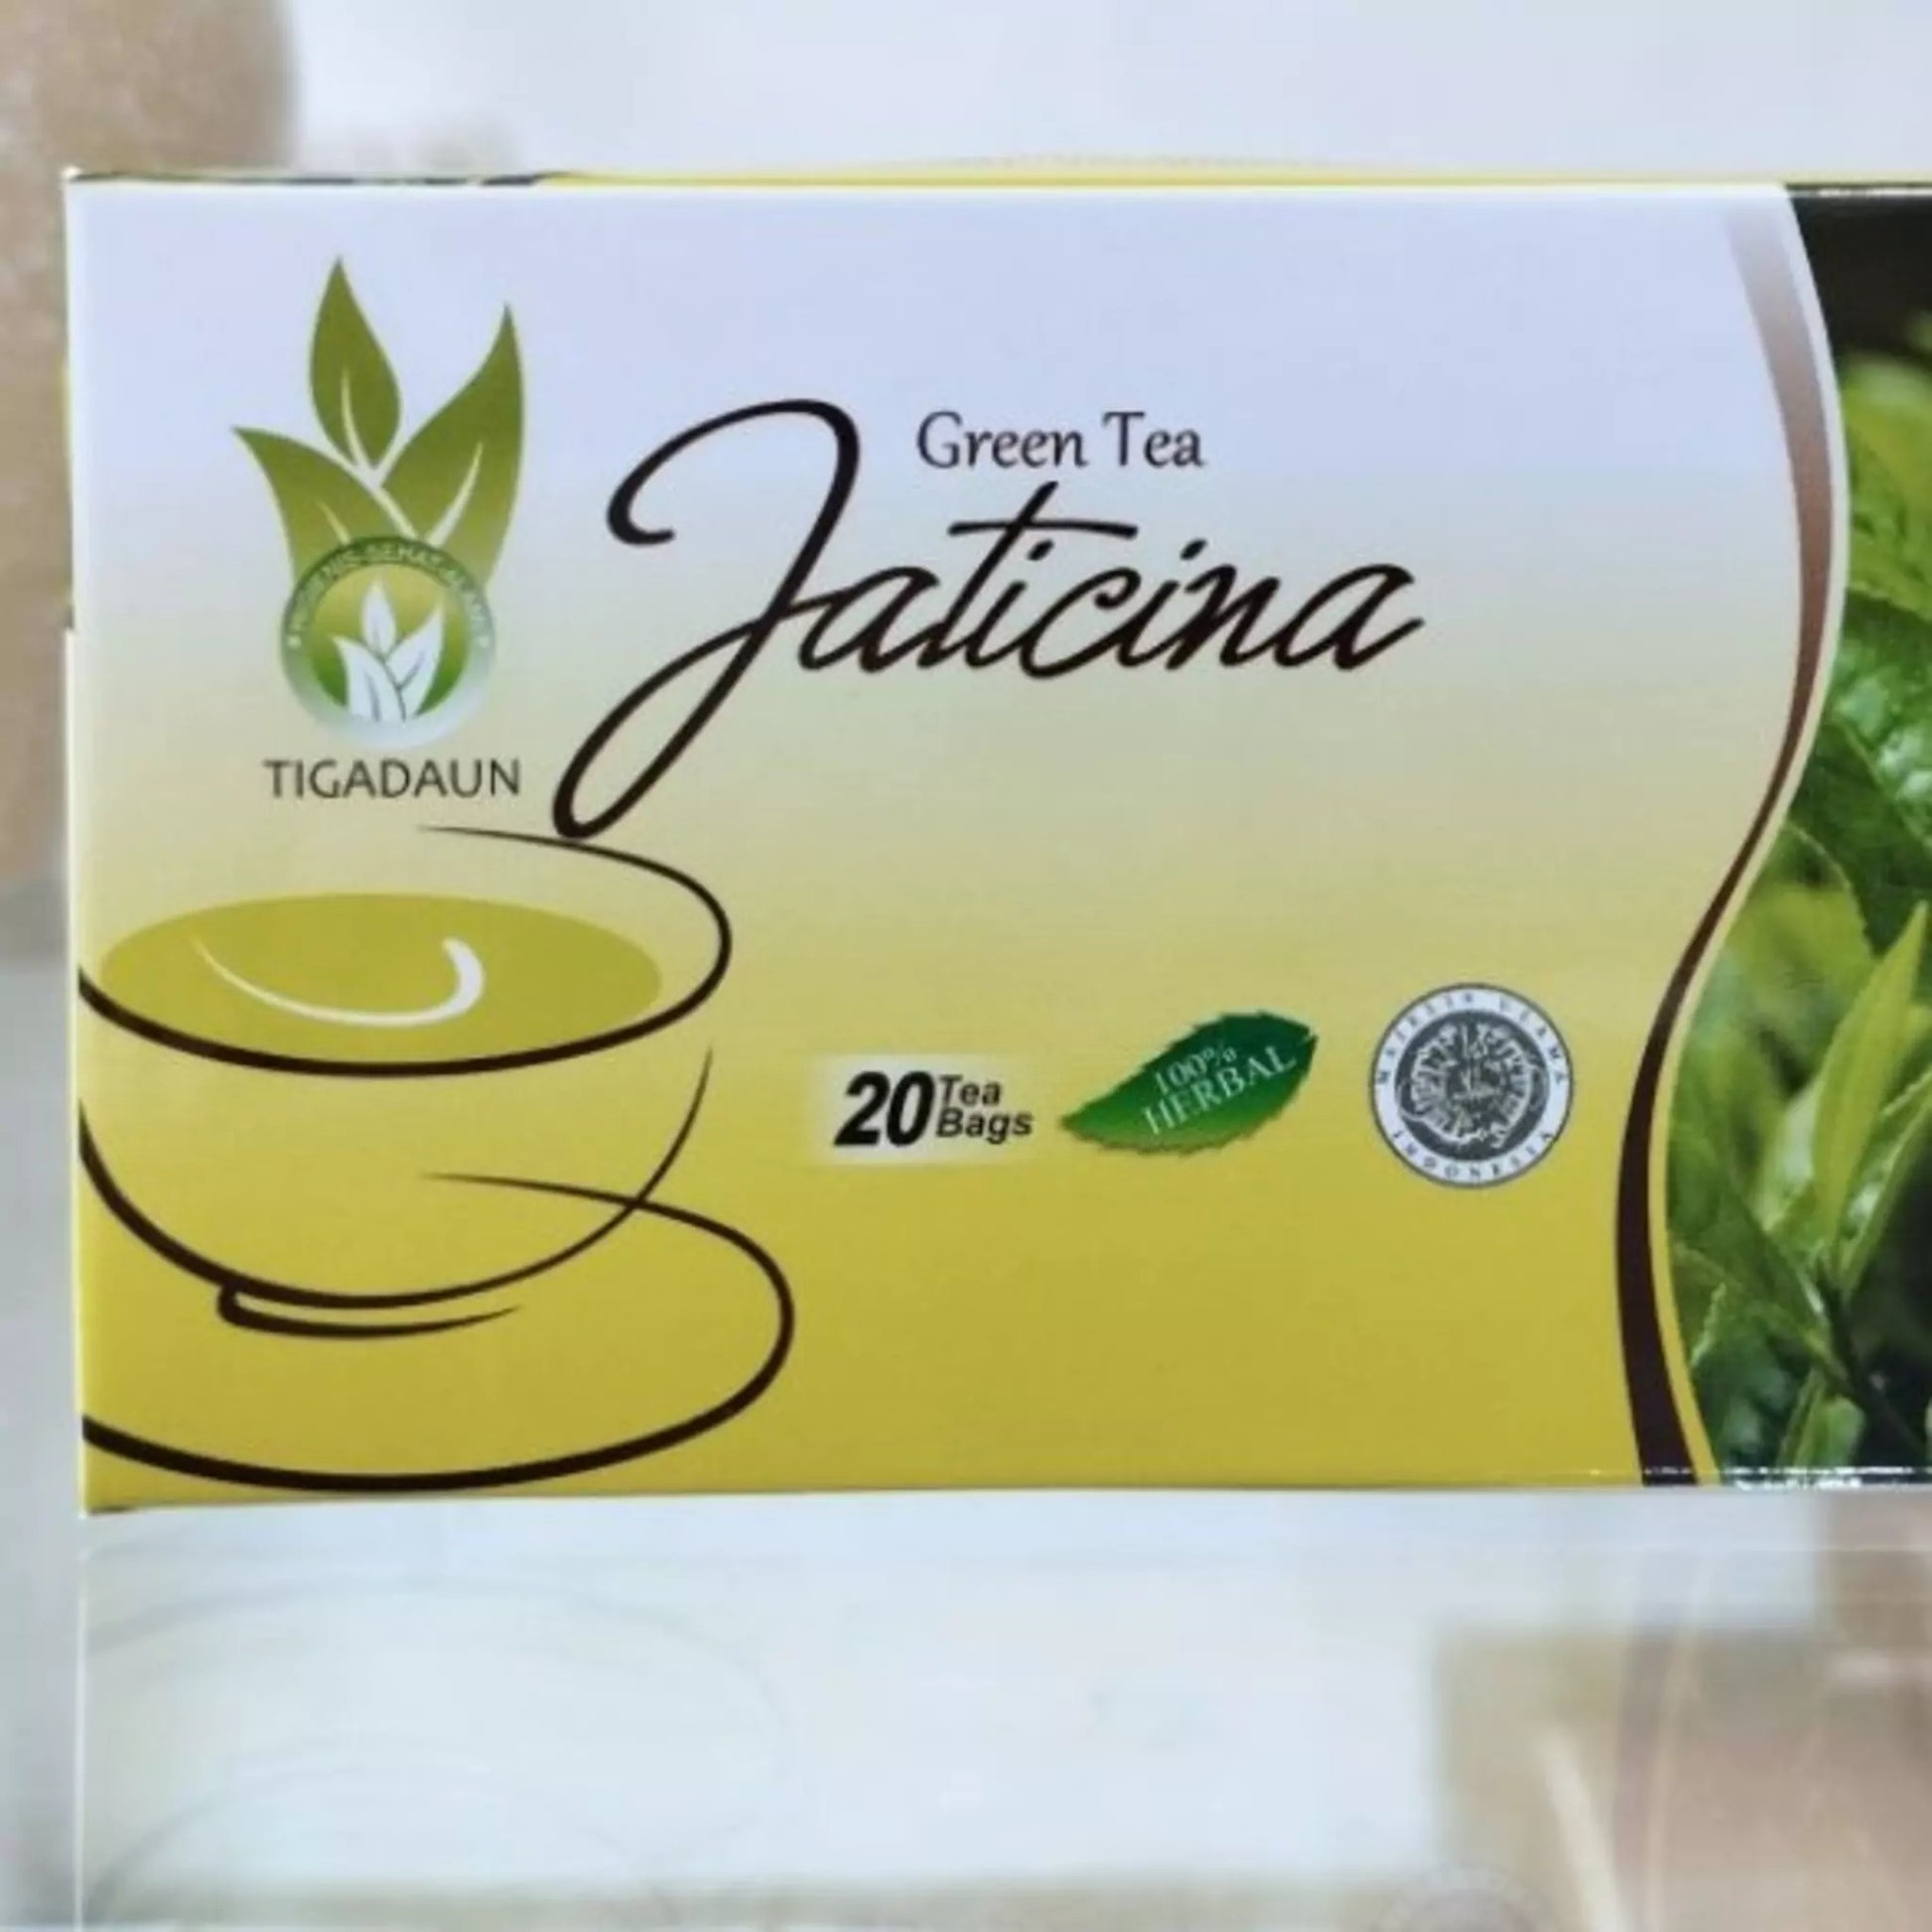 Senna Leaf Tea Bags For Sale, TIGA DAUN Senna Leaf Herbal Tea